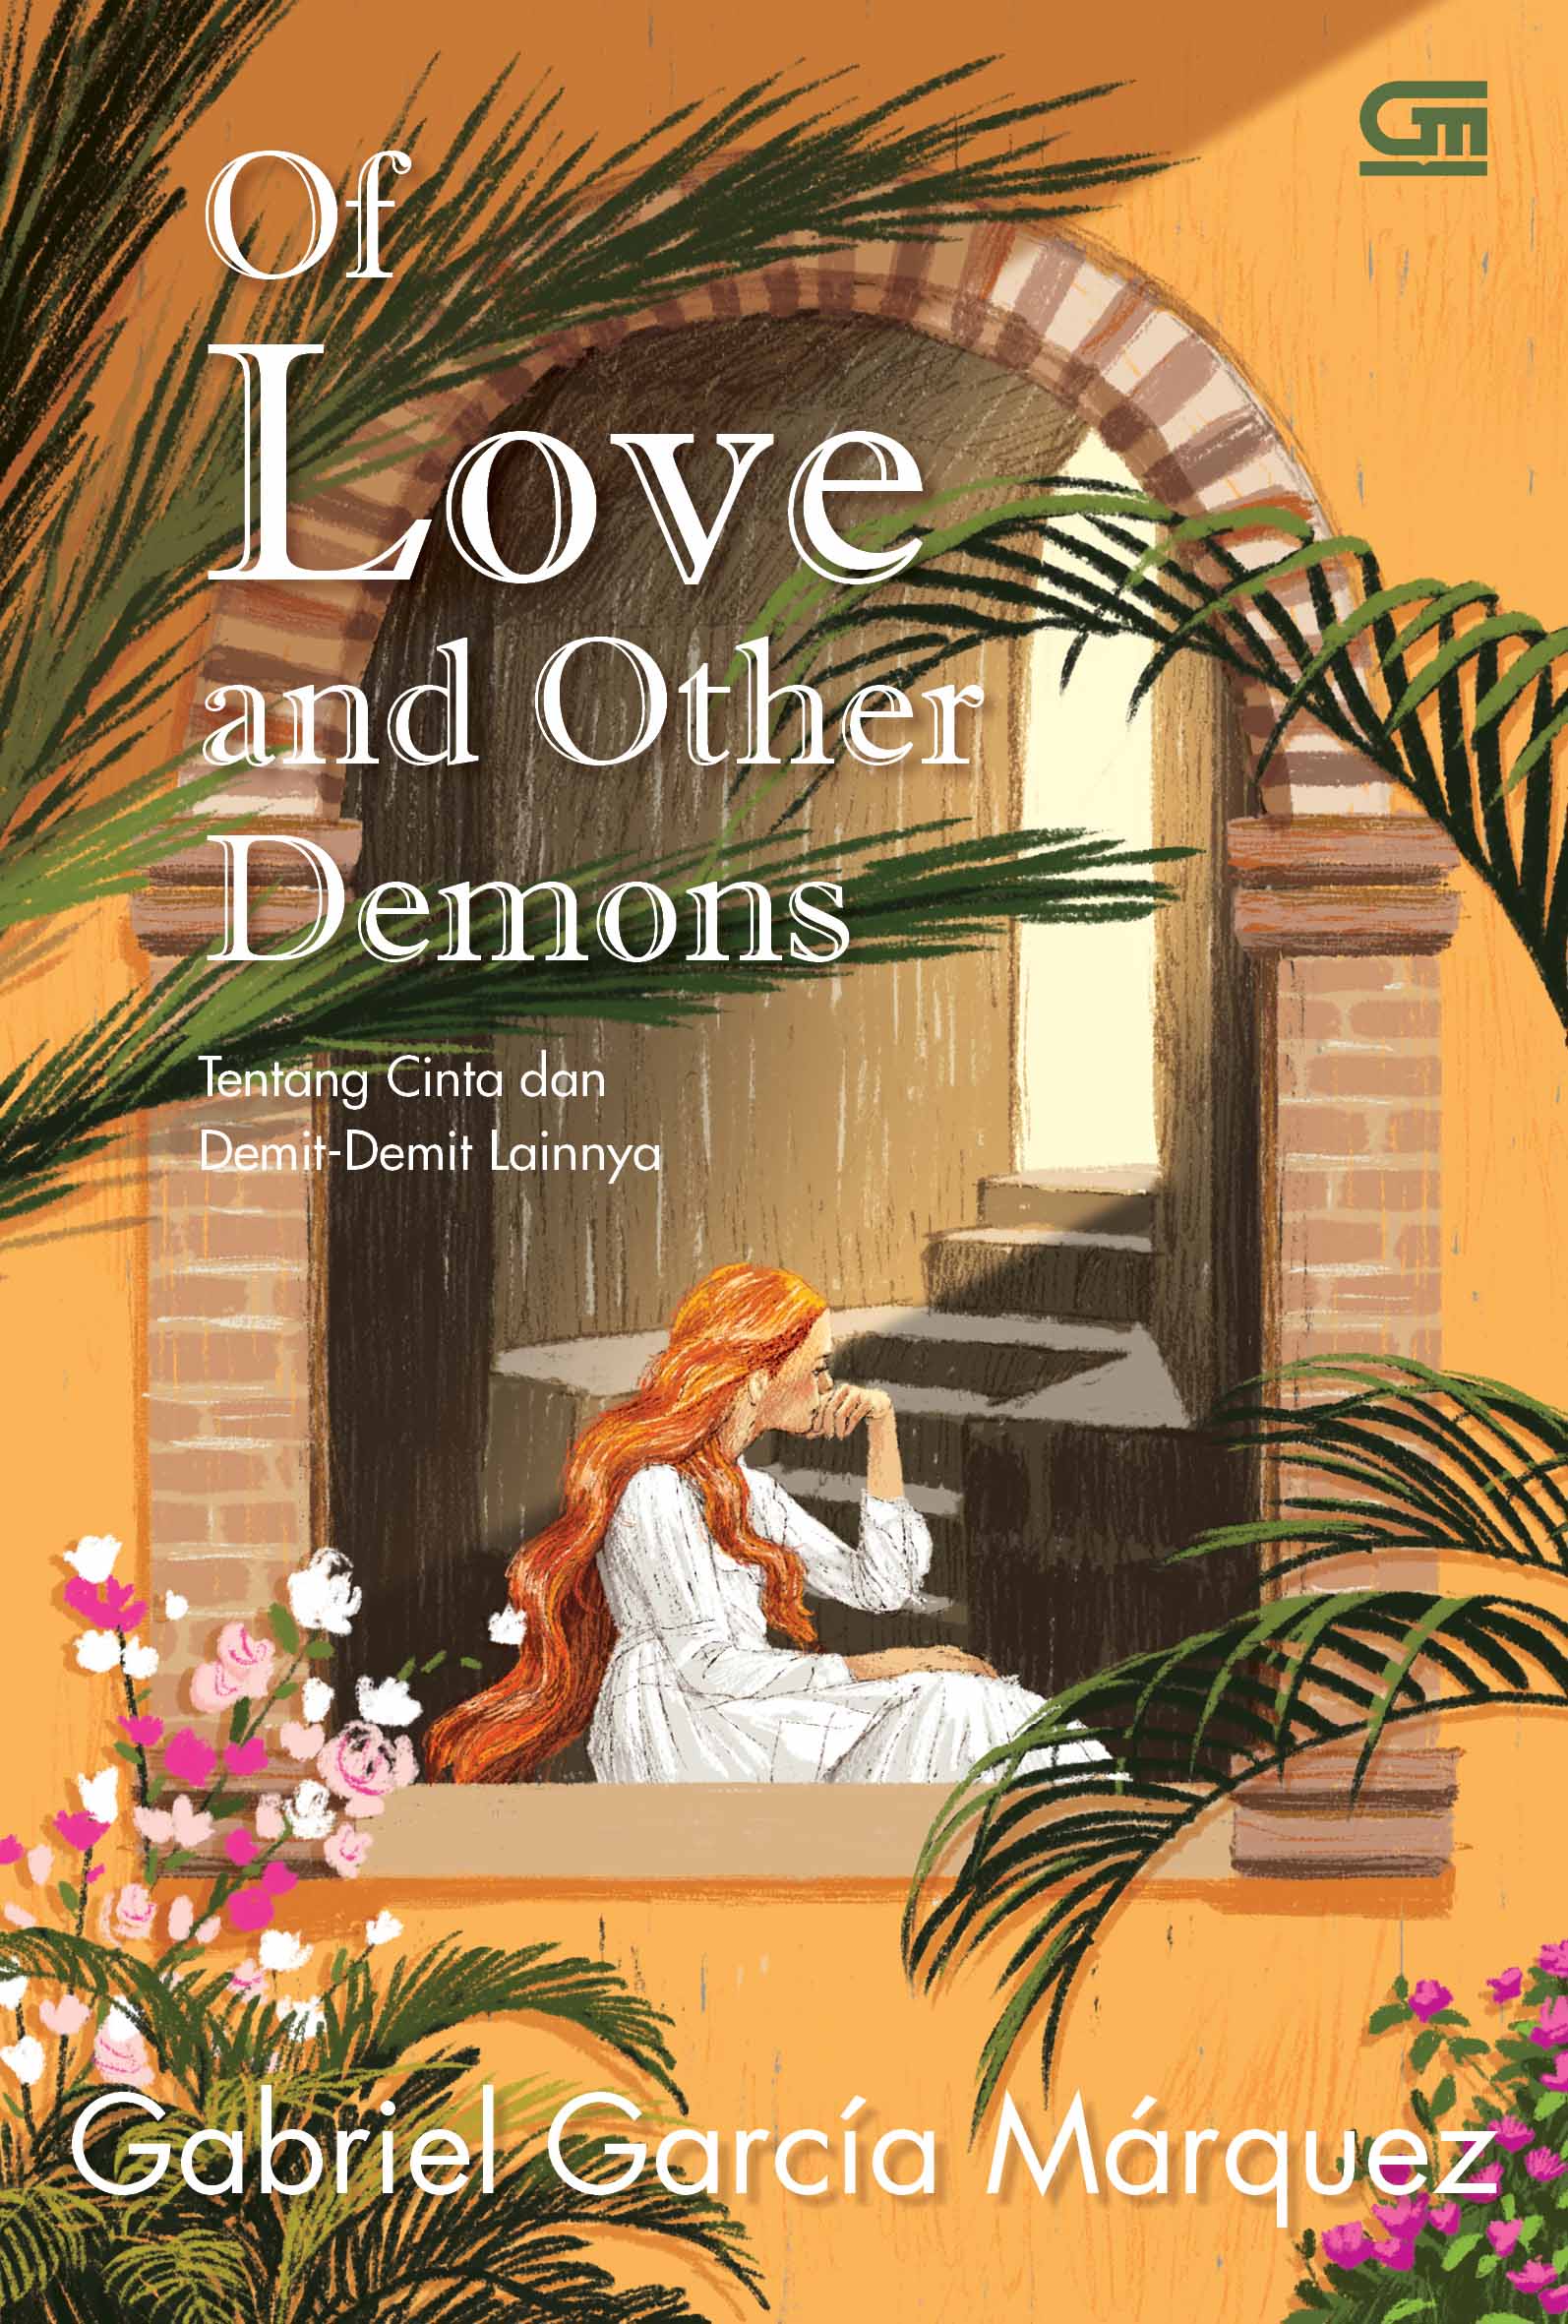 Tentang Cinta dan Demit-Demit Lainnya (Of Love and Other Demons)